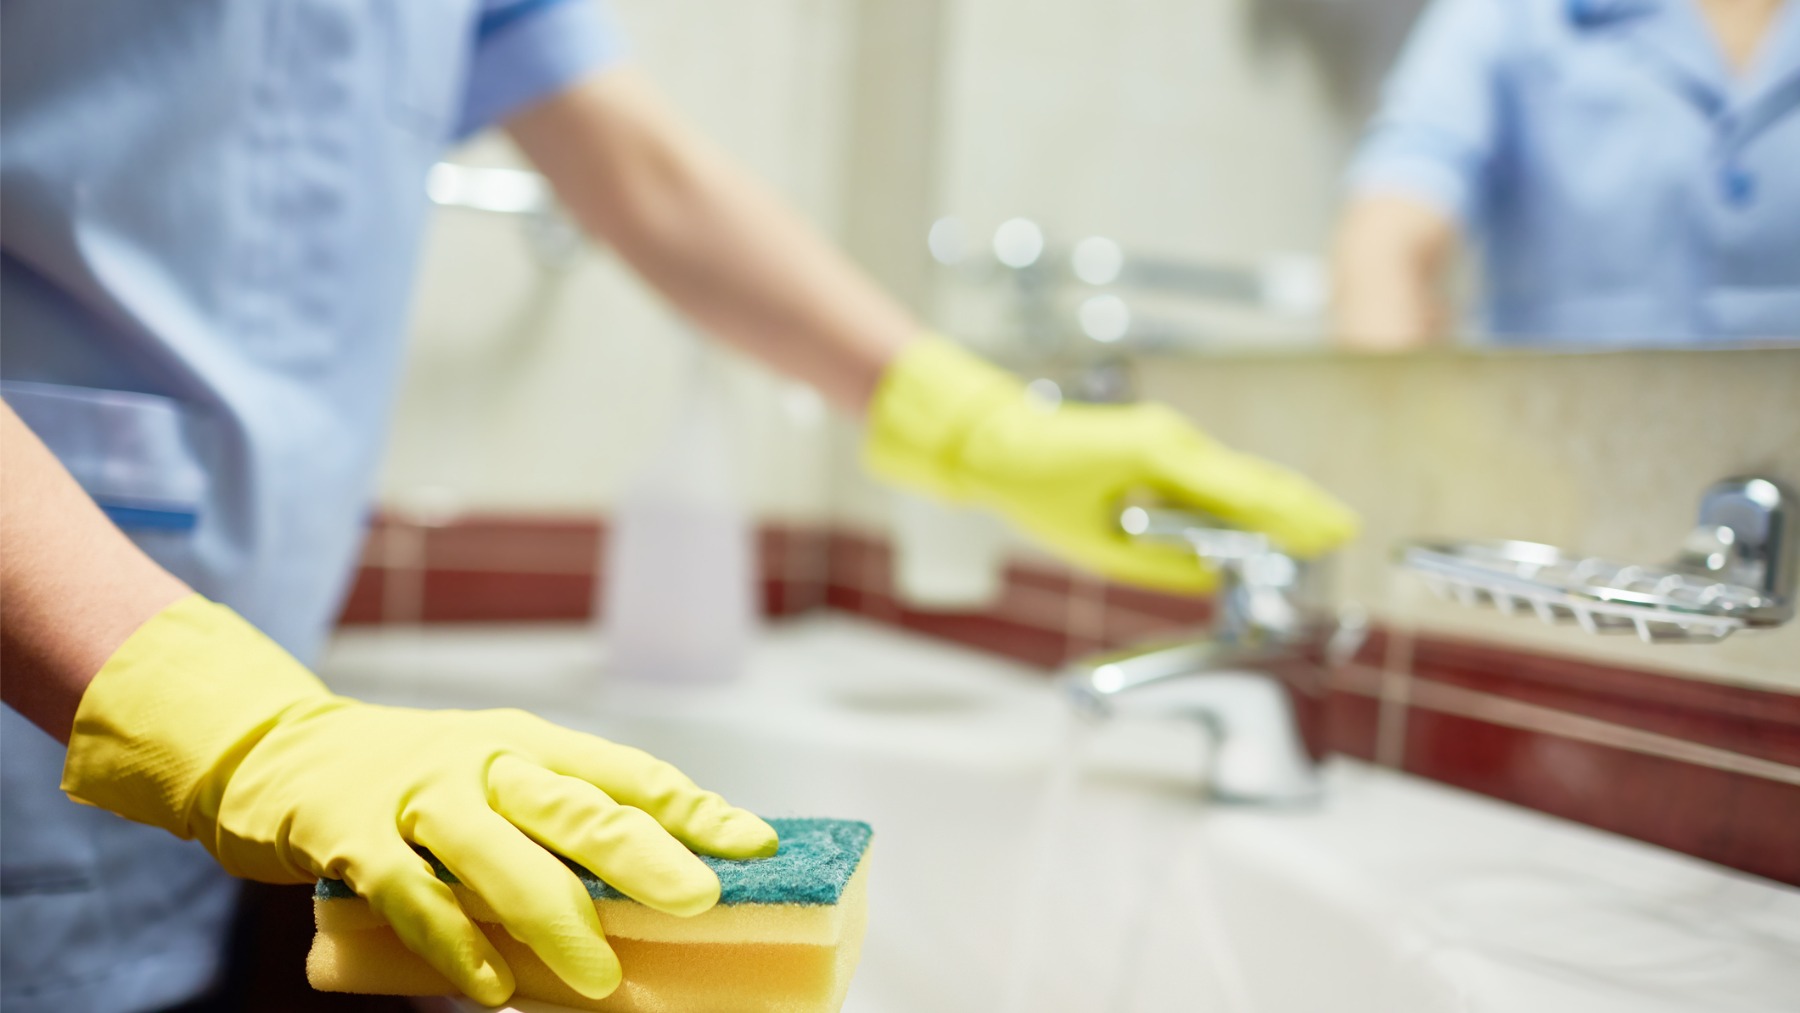 Trucos limpieza: el producto infalible para dejar buen olor en casa